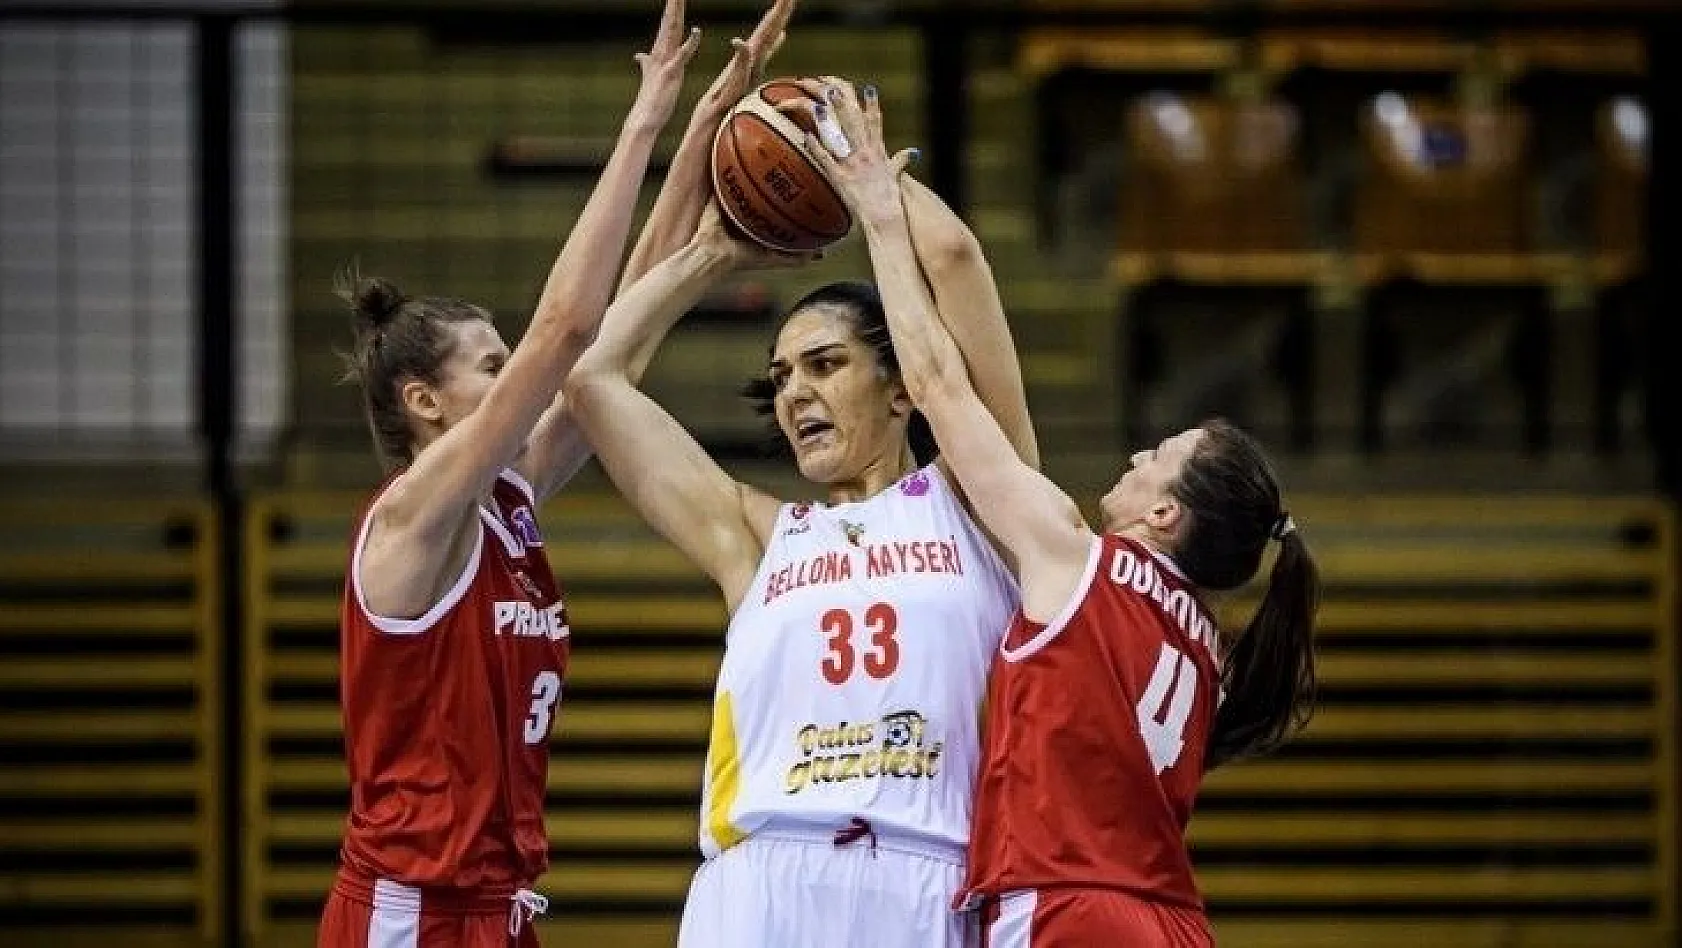 Euro Cup Women Basketbol: Bellona Kayseri Basketbol: 106 - BC Prometey:82